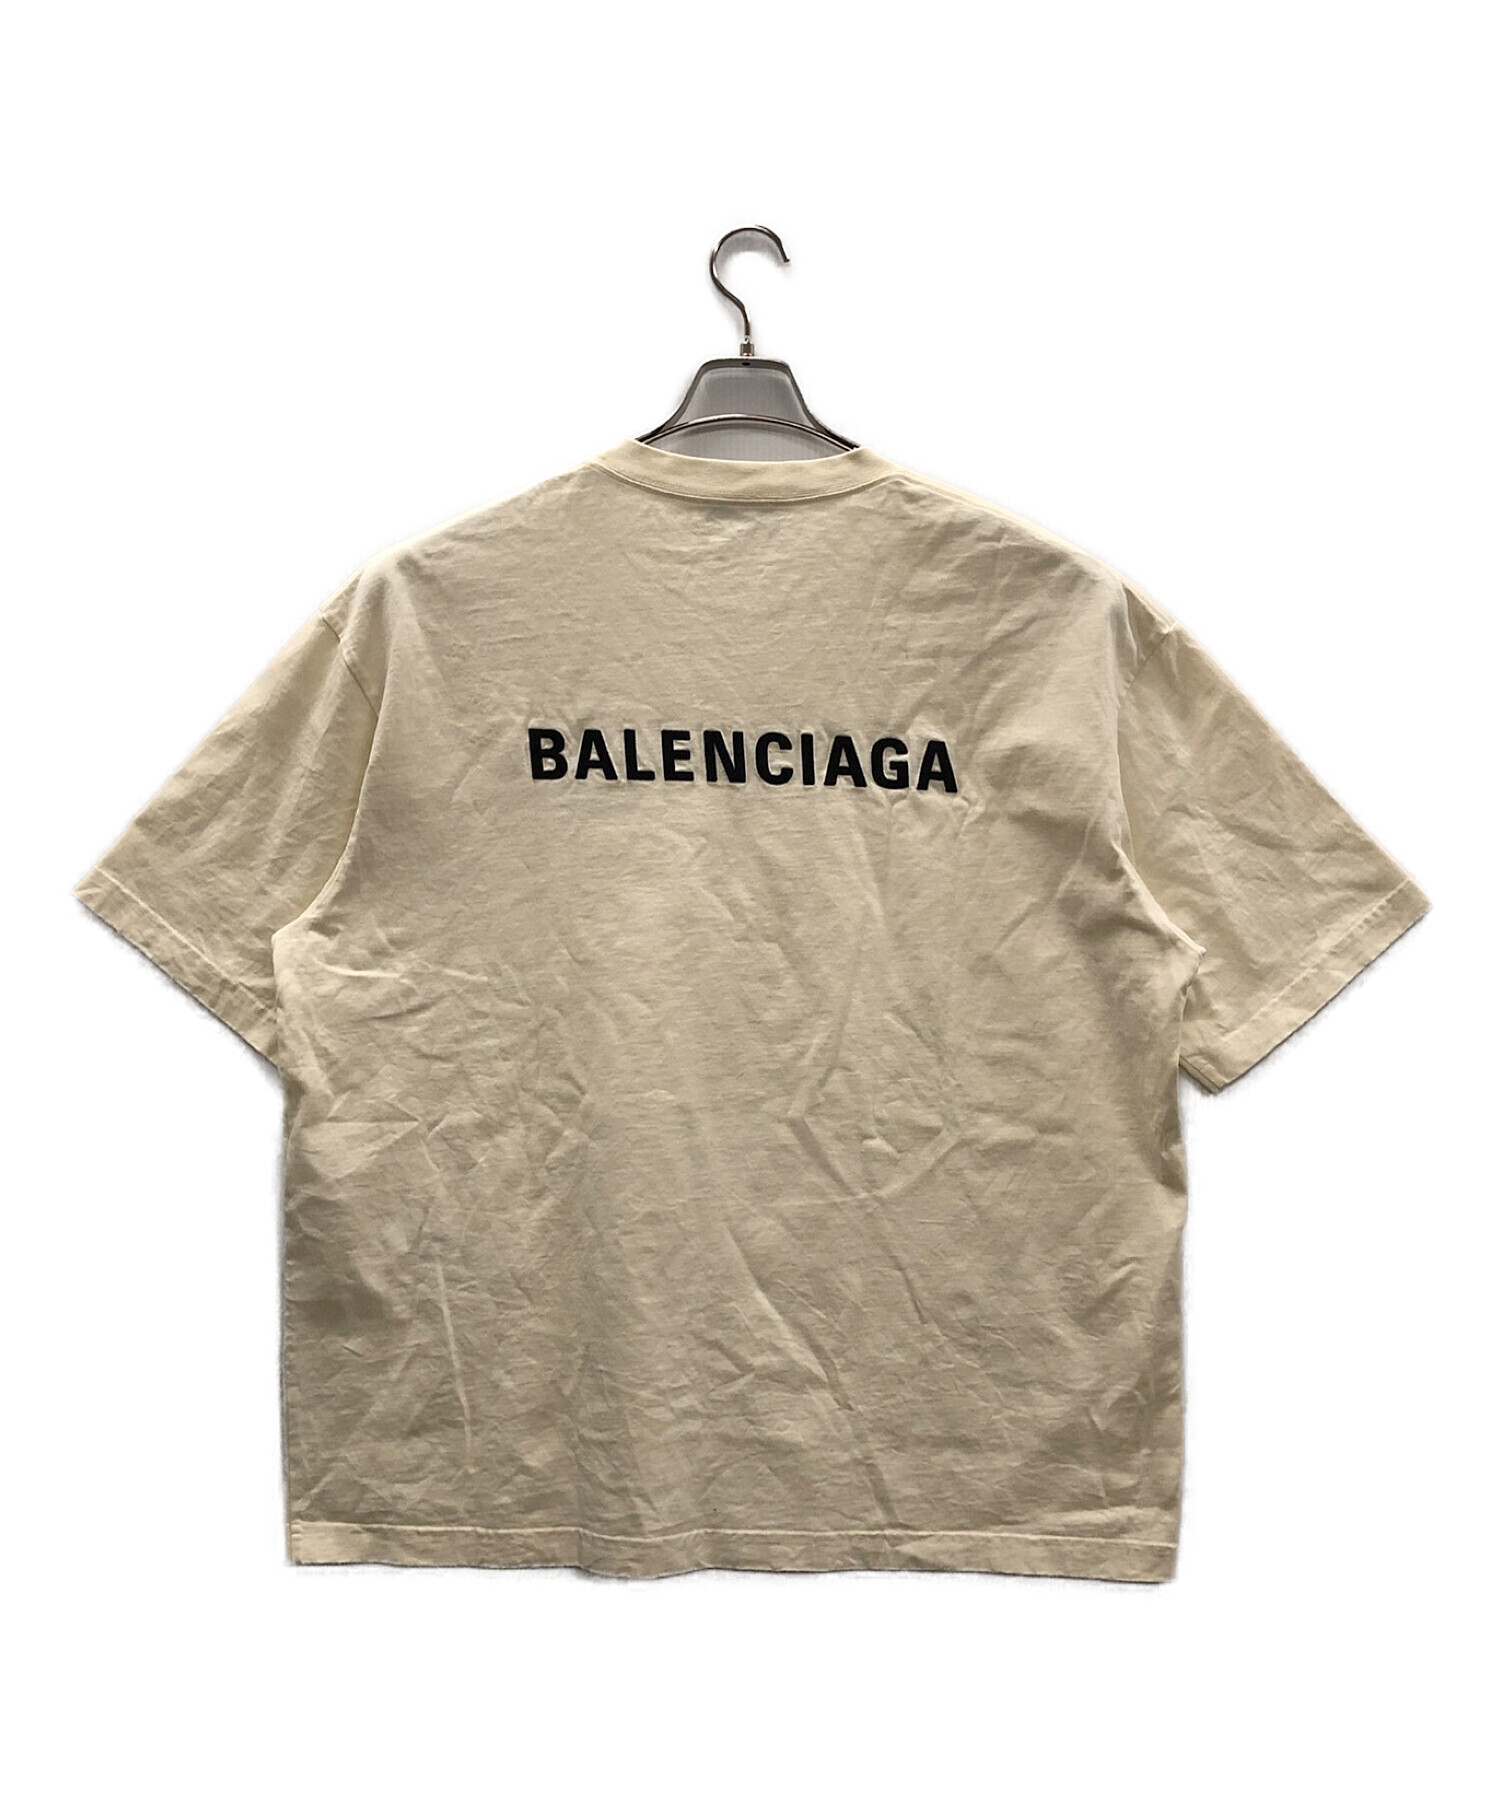 BALENCIAGA (バレンシアガ) ロゴTシャツ アイボリー サイズ:XL